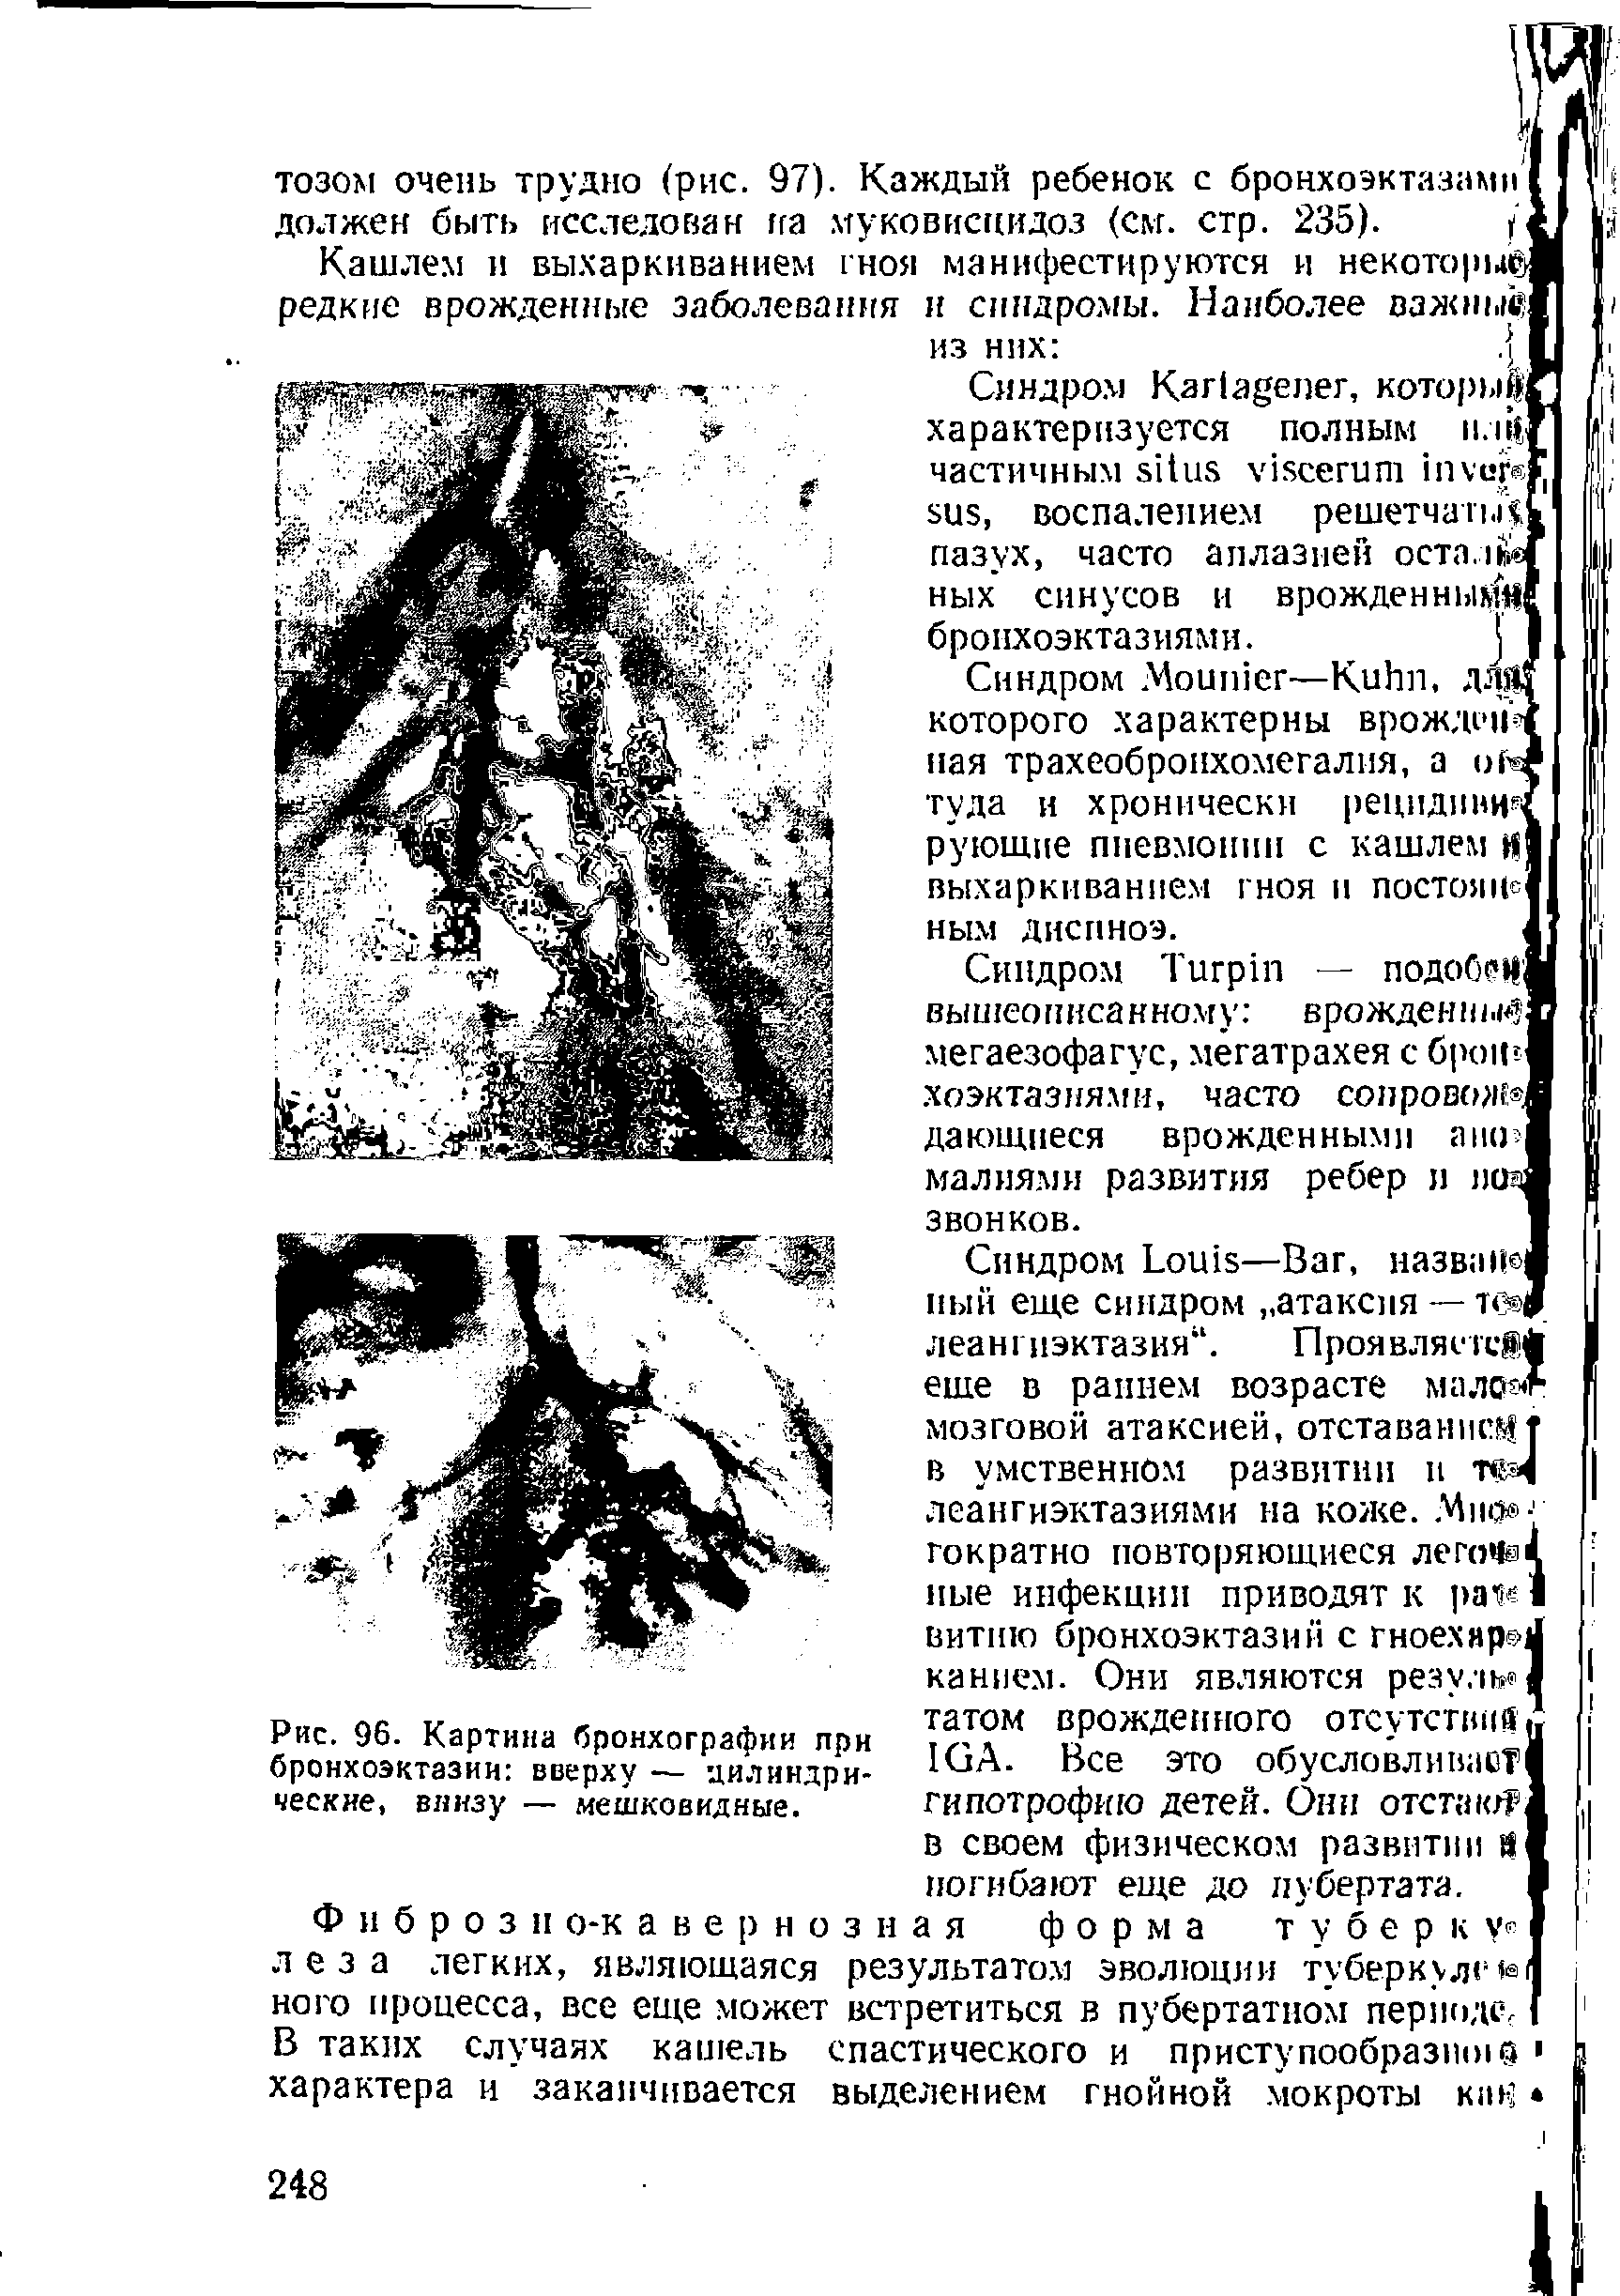 Рис. 96. Картина бронхографии при бронхоэктазии вверху — цилиндрические, внизу — мешковидные.